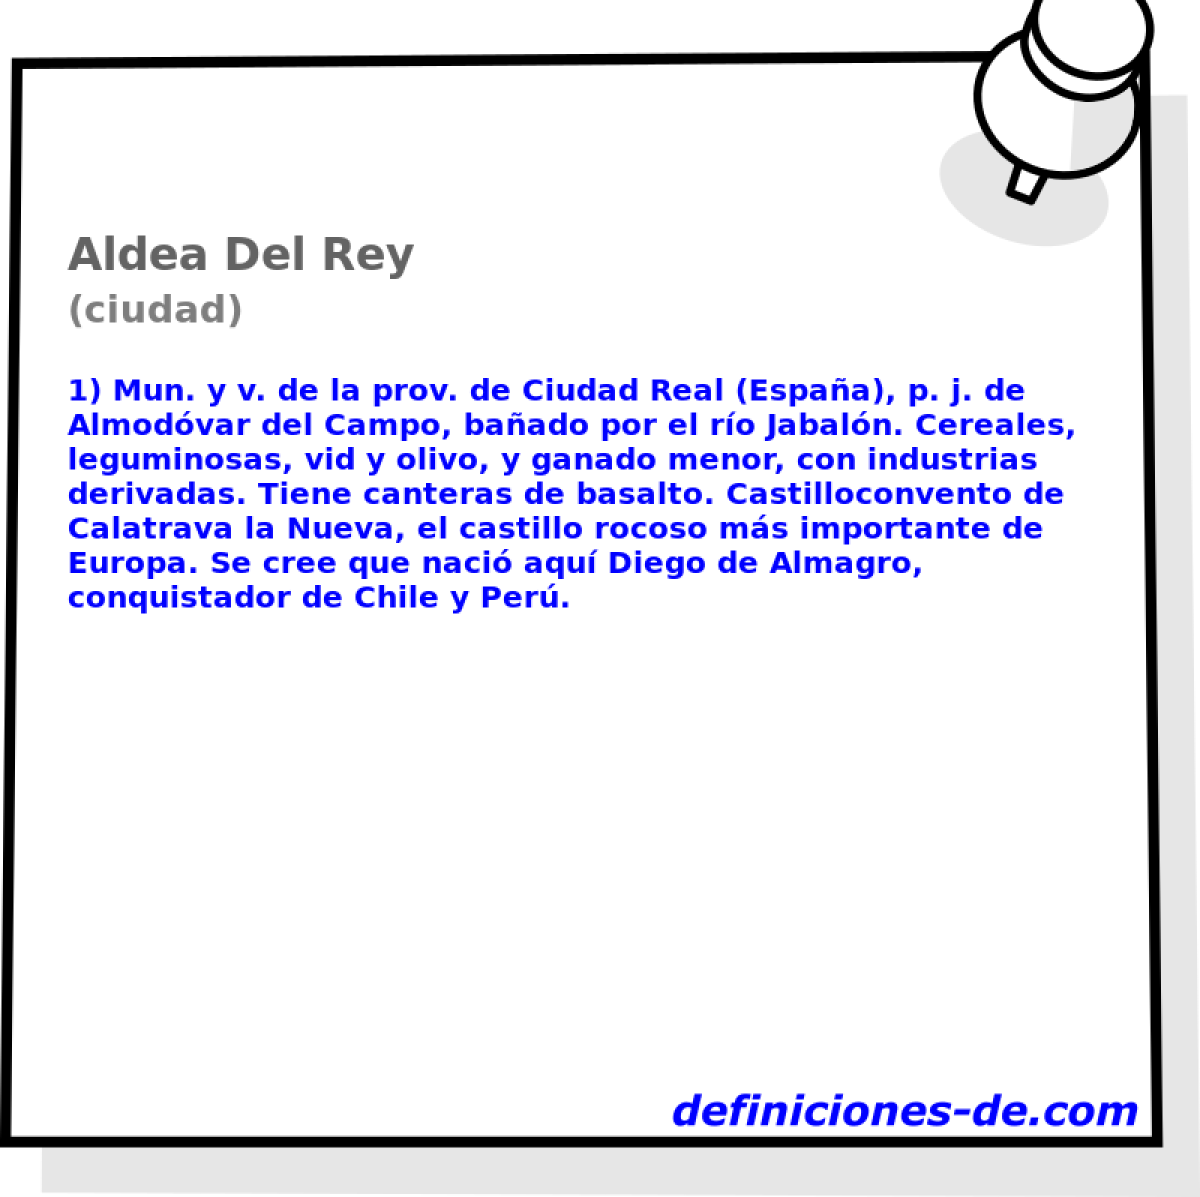 Aldea Del Rey (ciudad)